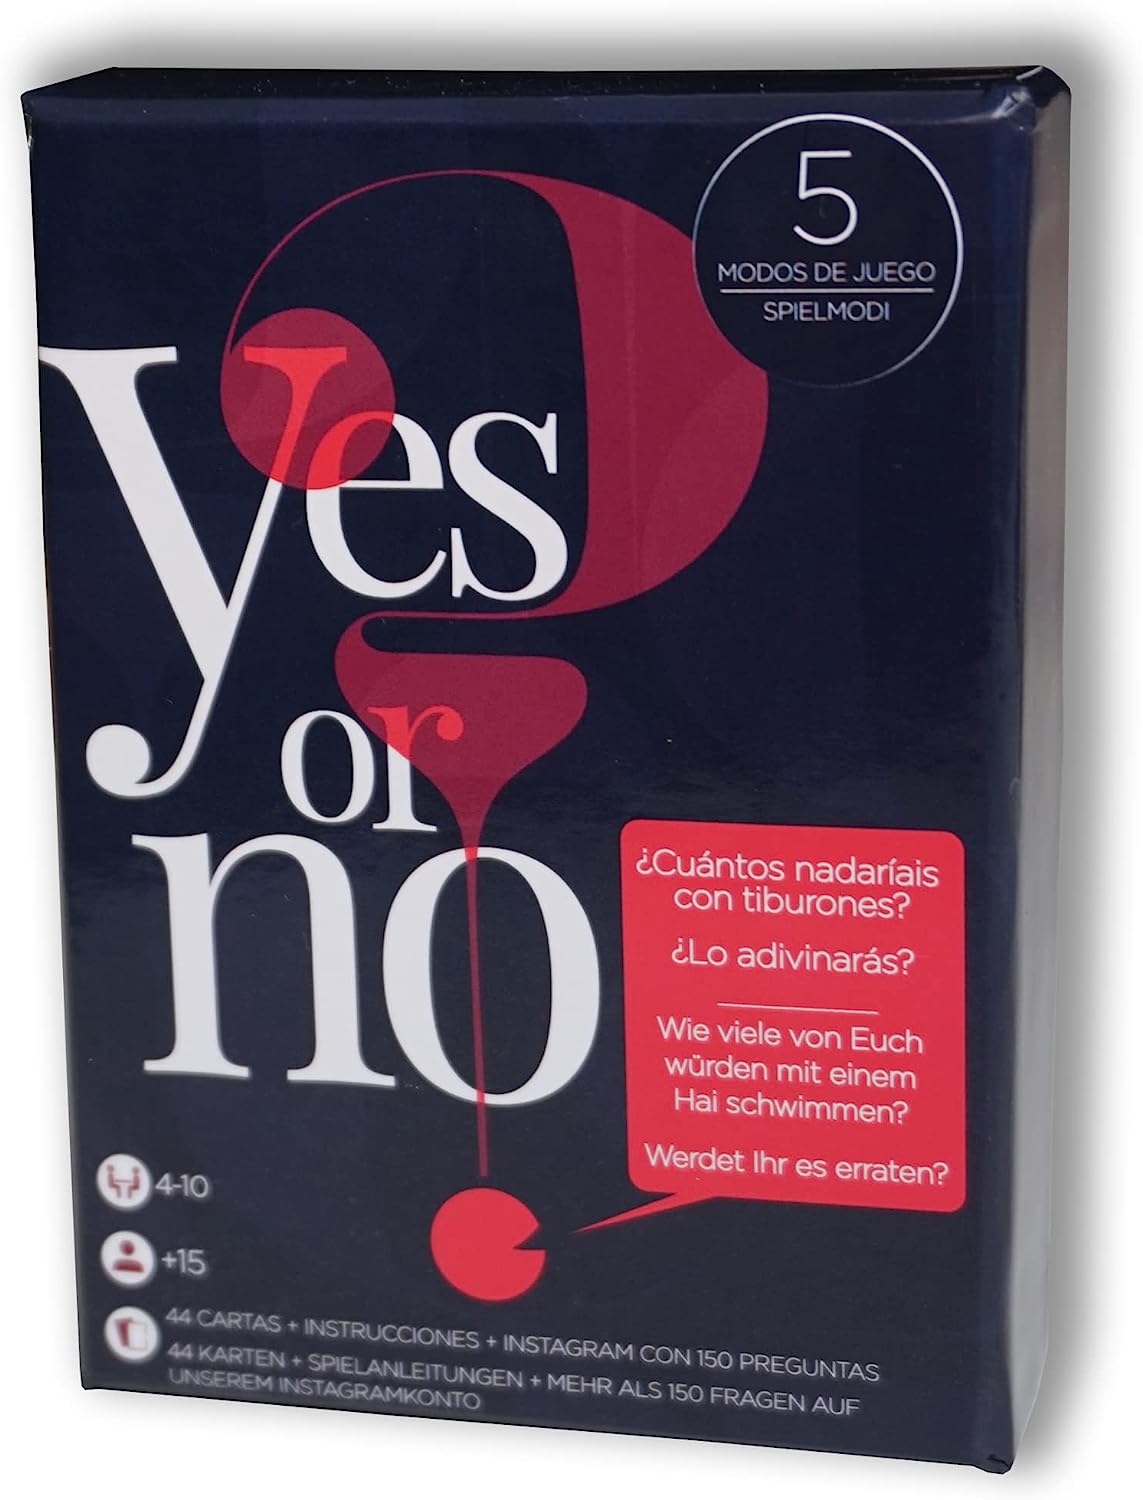 Ver categoría de sí o no (yes or no)